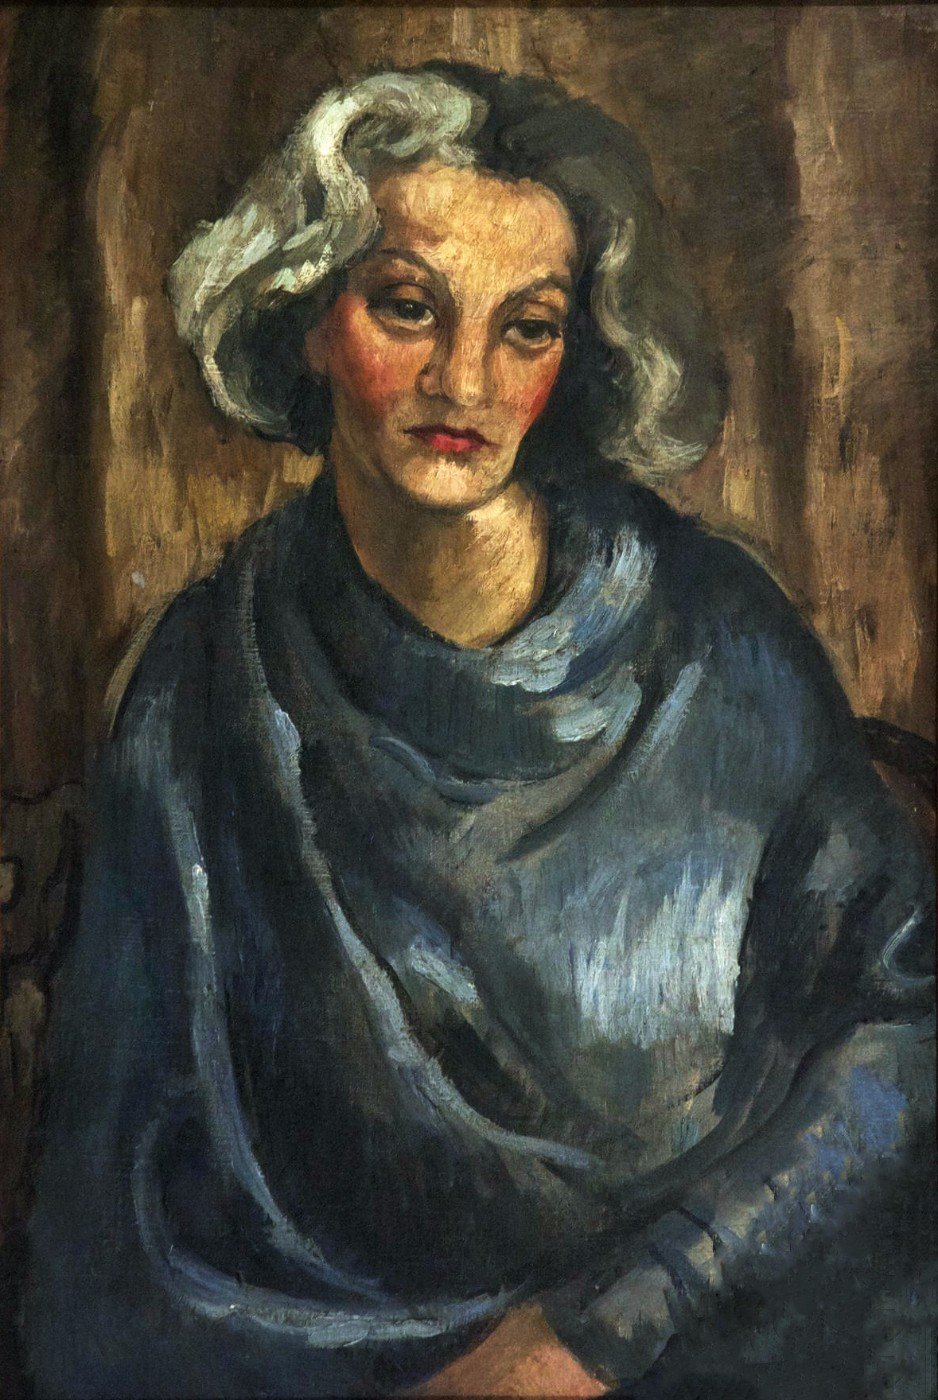 La señora Tachlitzky by Amrita Sher-Gil - 1930 - 54 x 80 cm Museo Nacional de Nueva Delhi, India